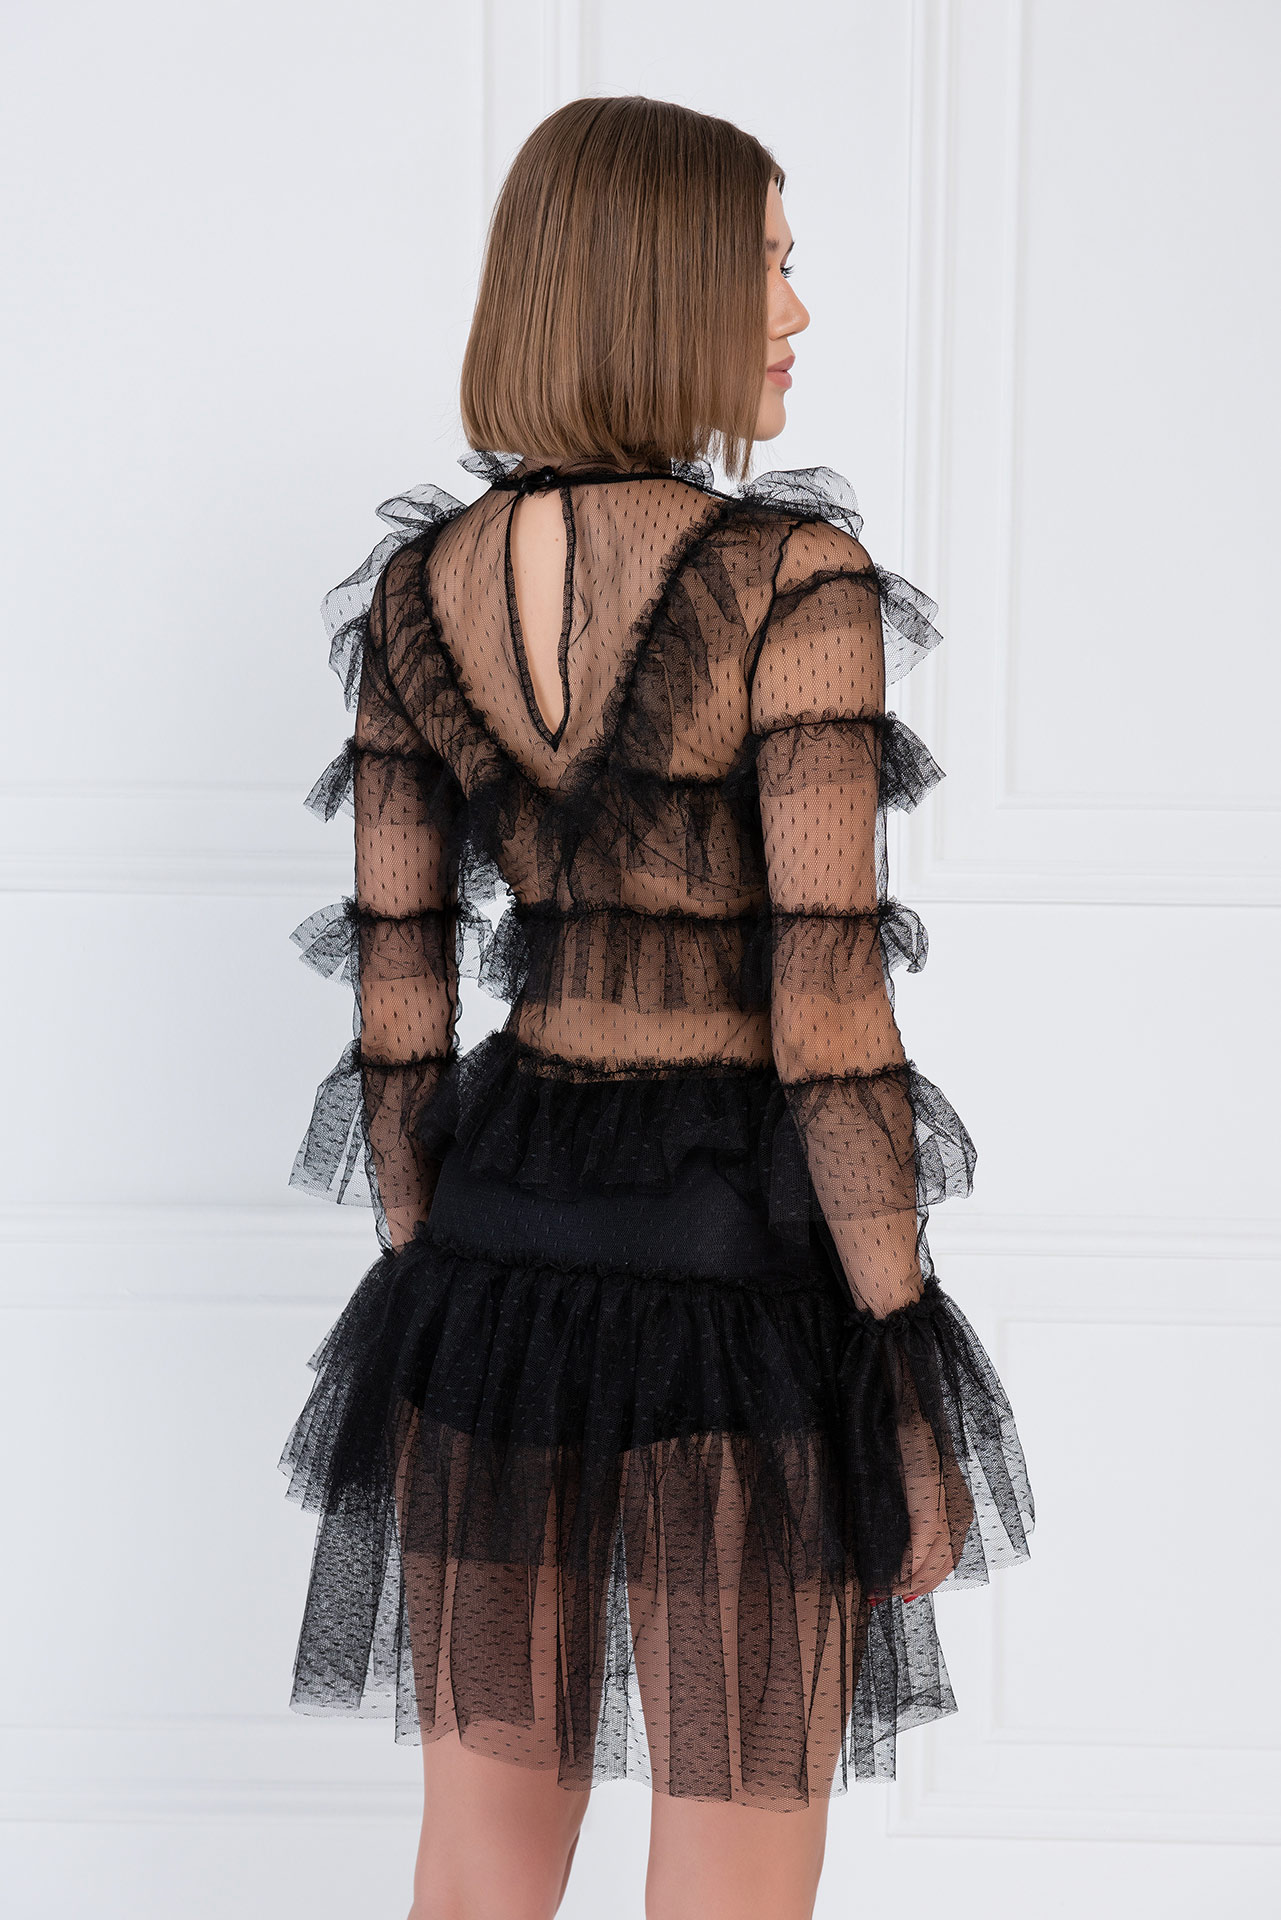 Прозрачное Платье с Рюшами черный Фатиновое Мини-Платье